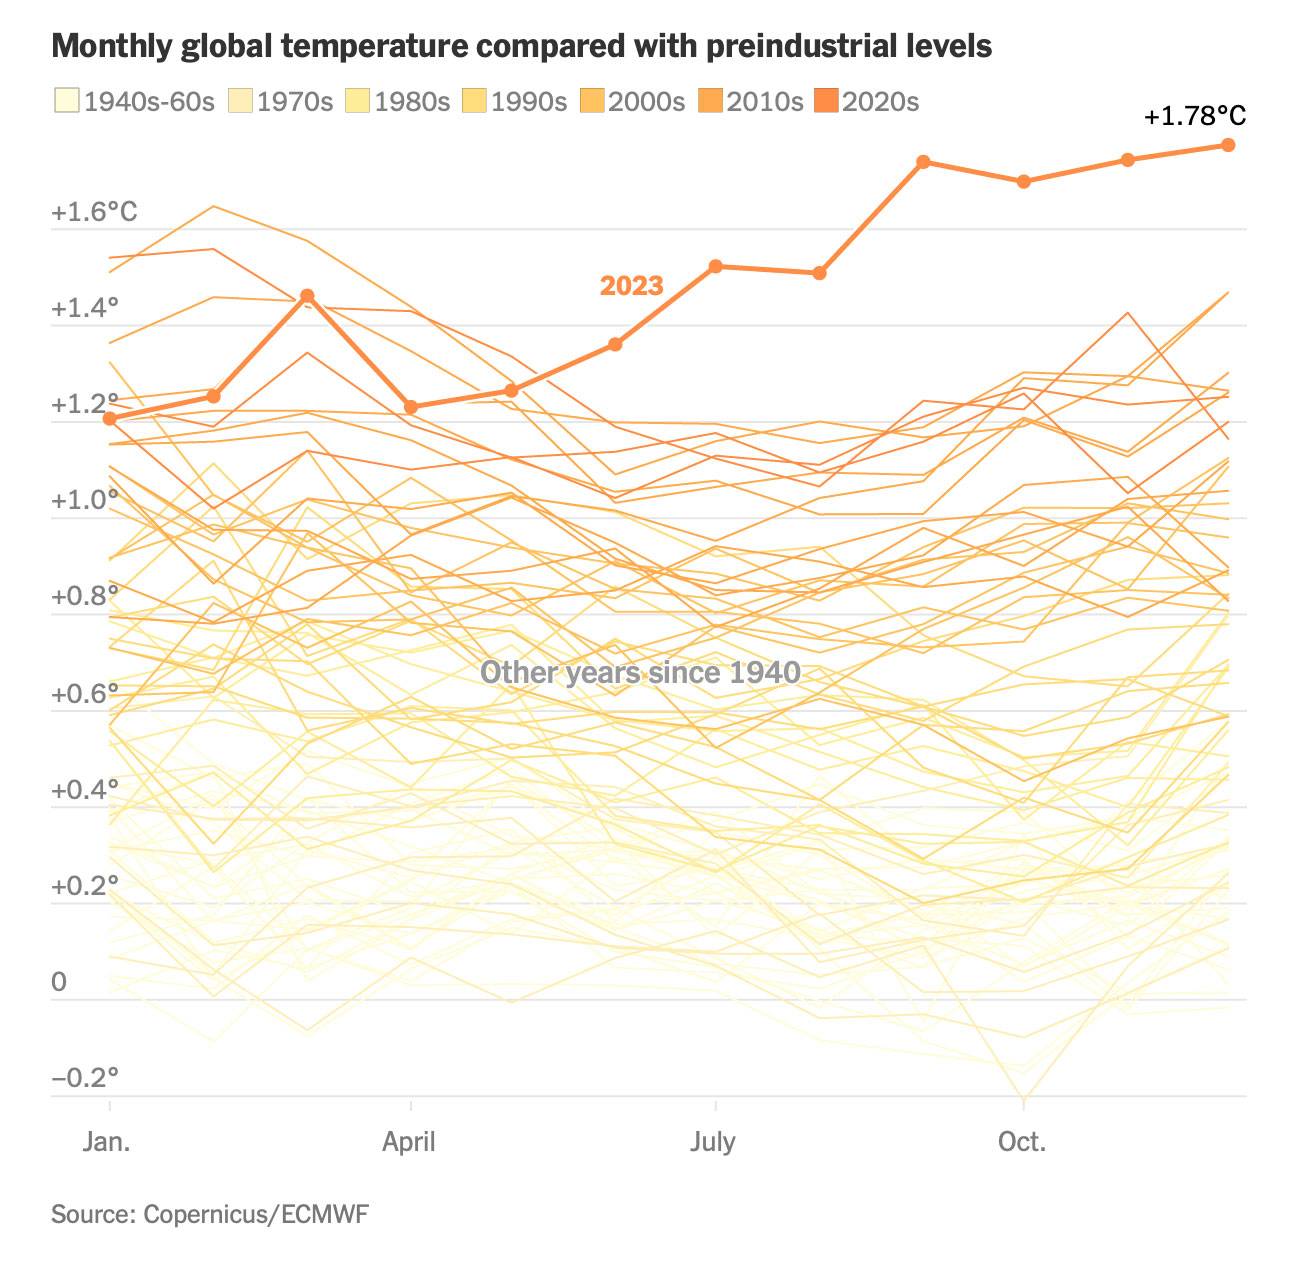 Temperature globali mensili confrontate con i livelli preindustriali